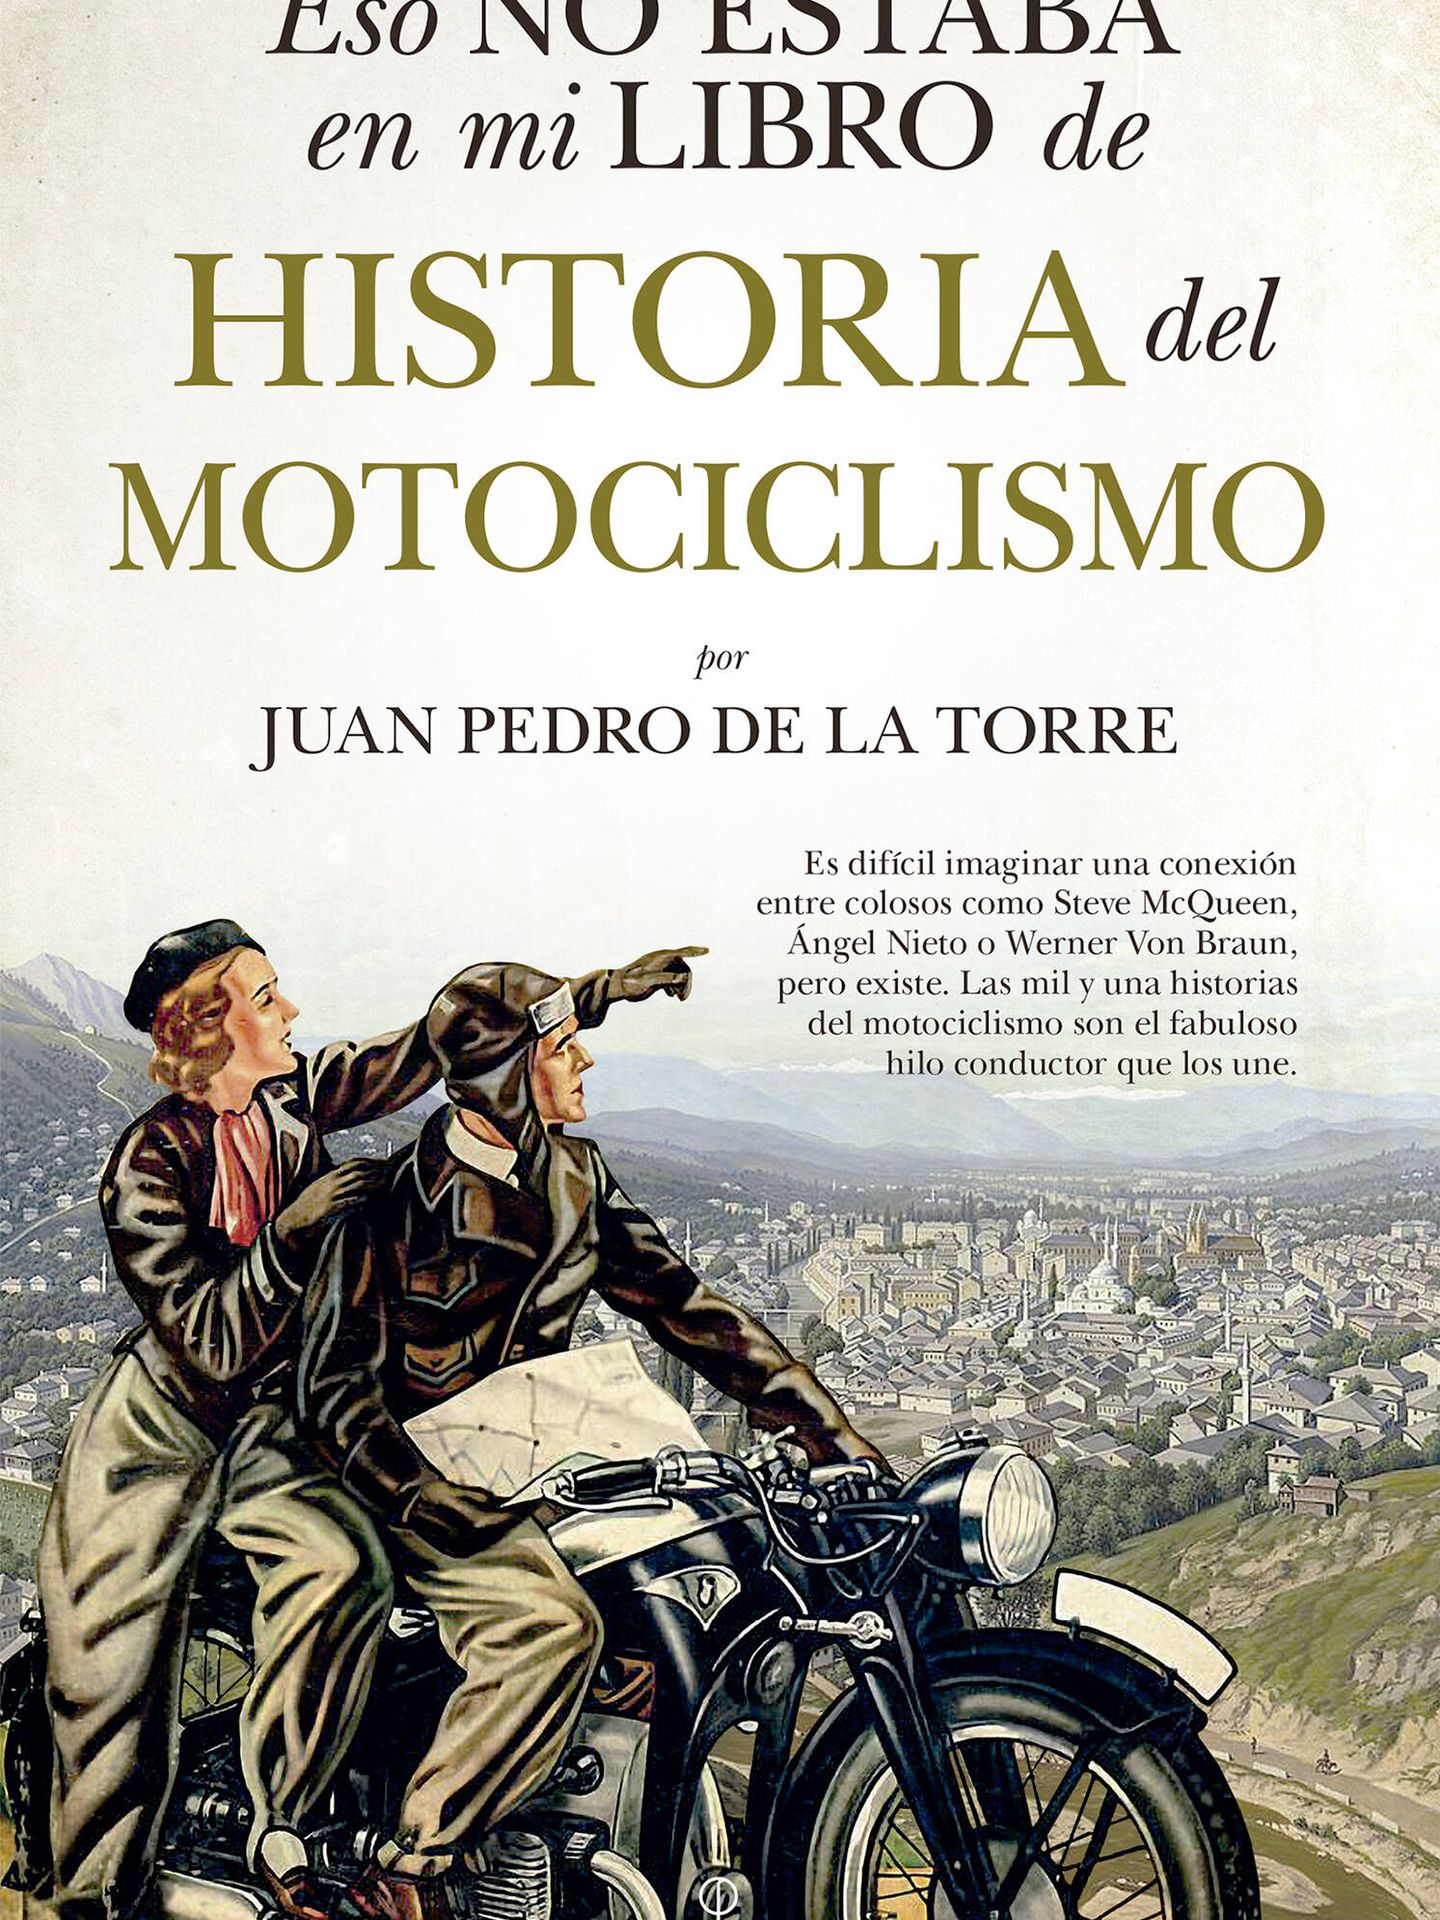 Portada del libro 'Eso no estaba en mi libro de historia del motociclismo', de Juan Pedro de la Torre.